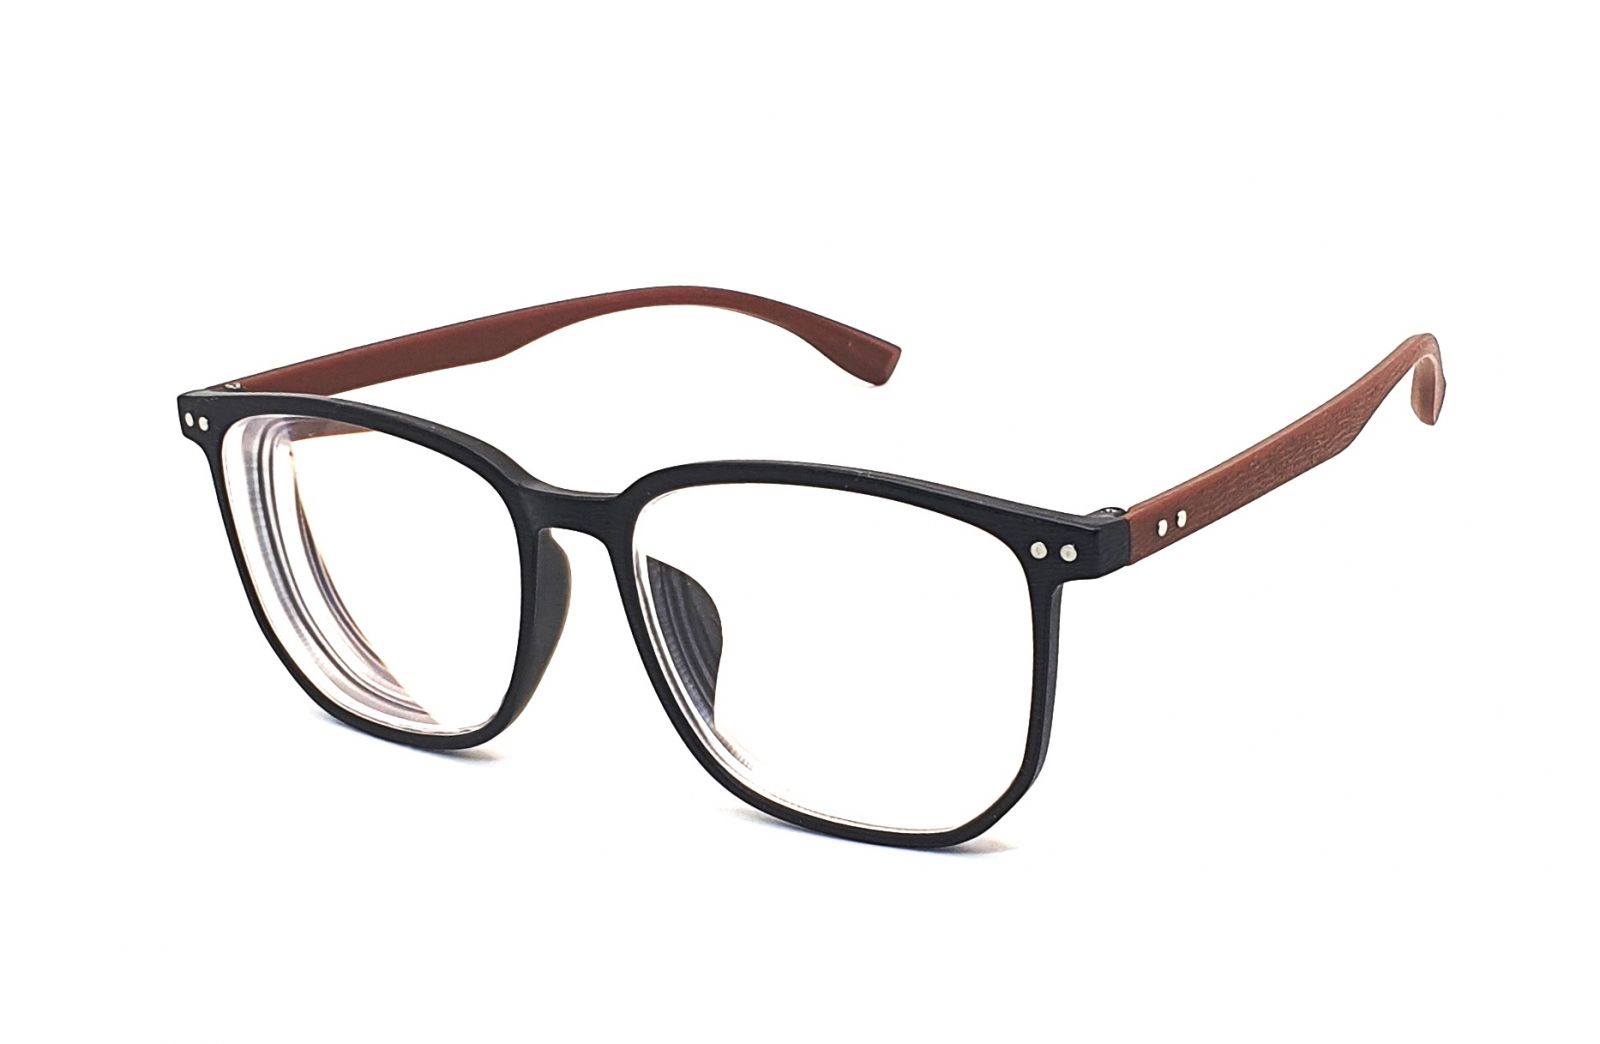 Samozabarvovací dioptrické brýle F23 / -5,00 black/brown